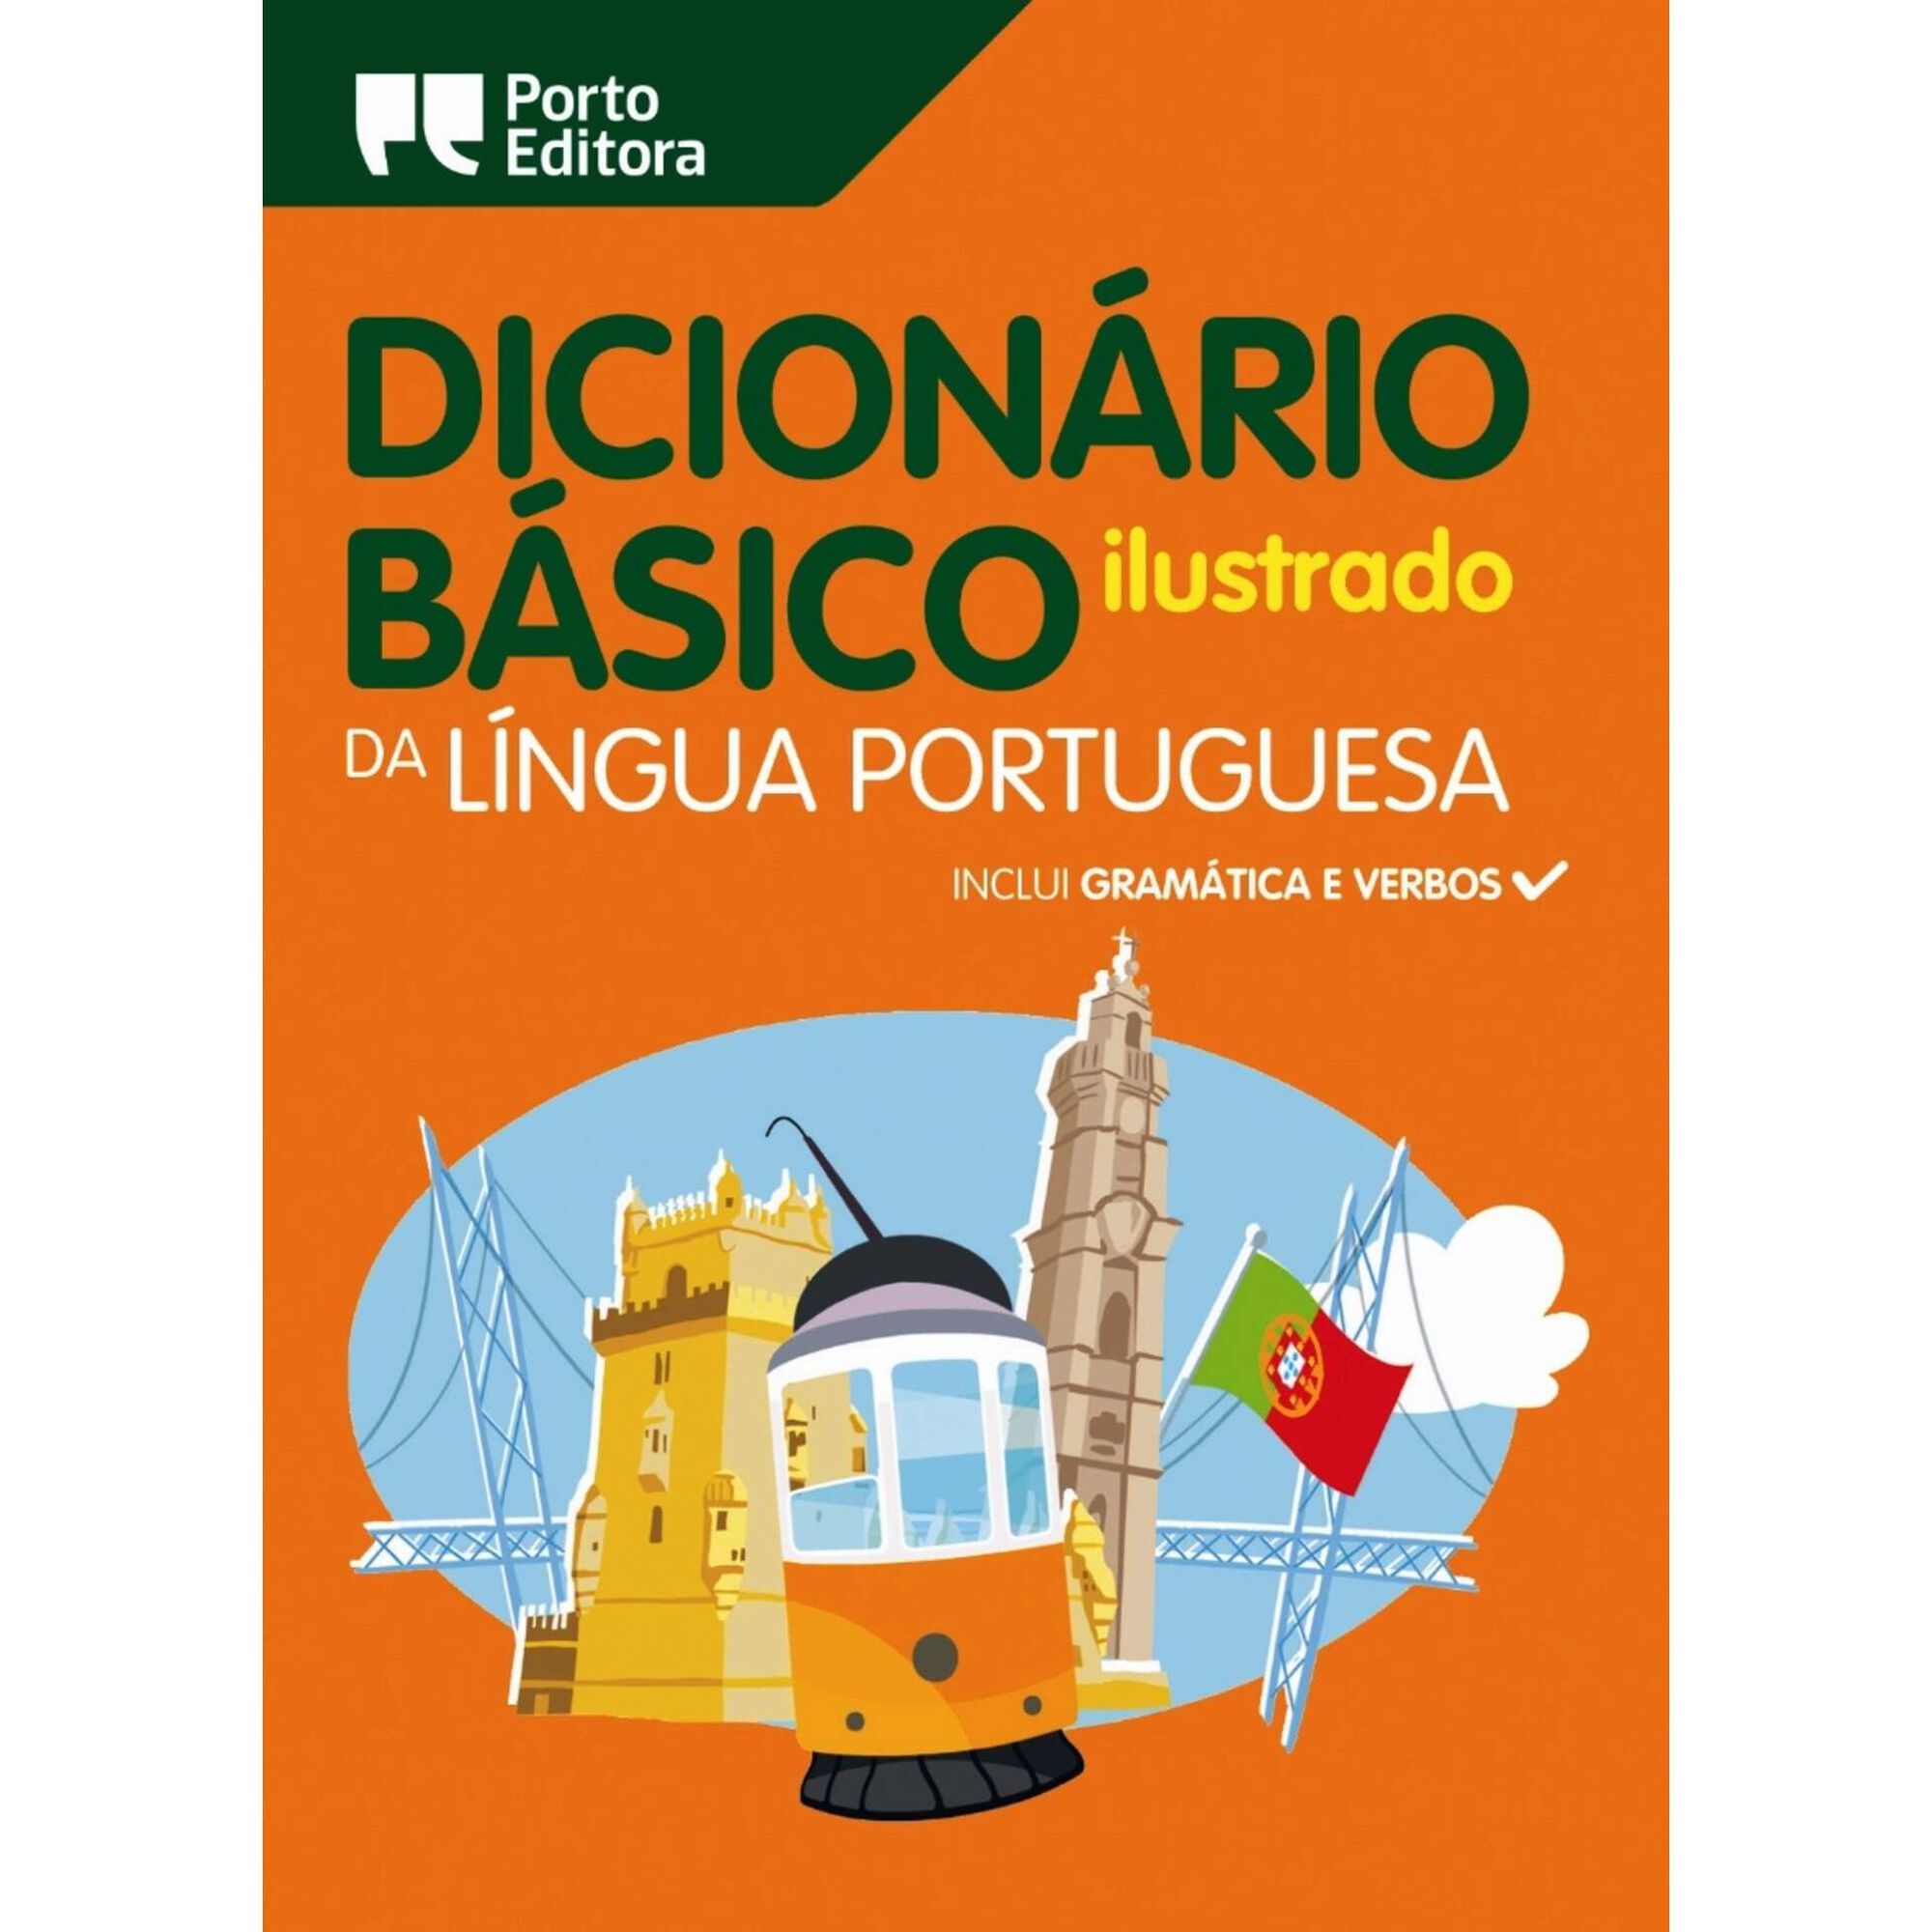 encontrastes  Dicionário Infopédia Básico Ilustrado de Língua Portuguesa